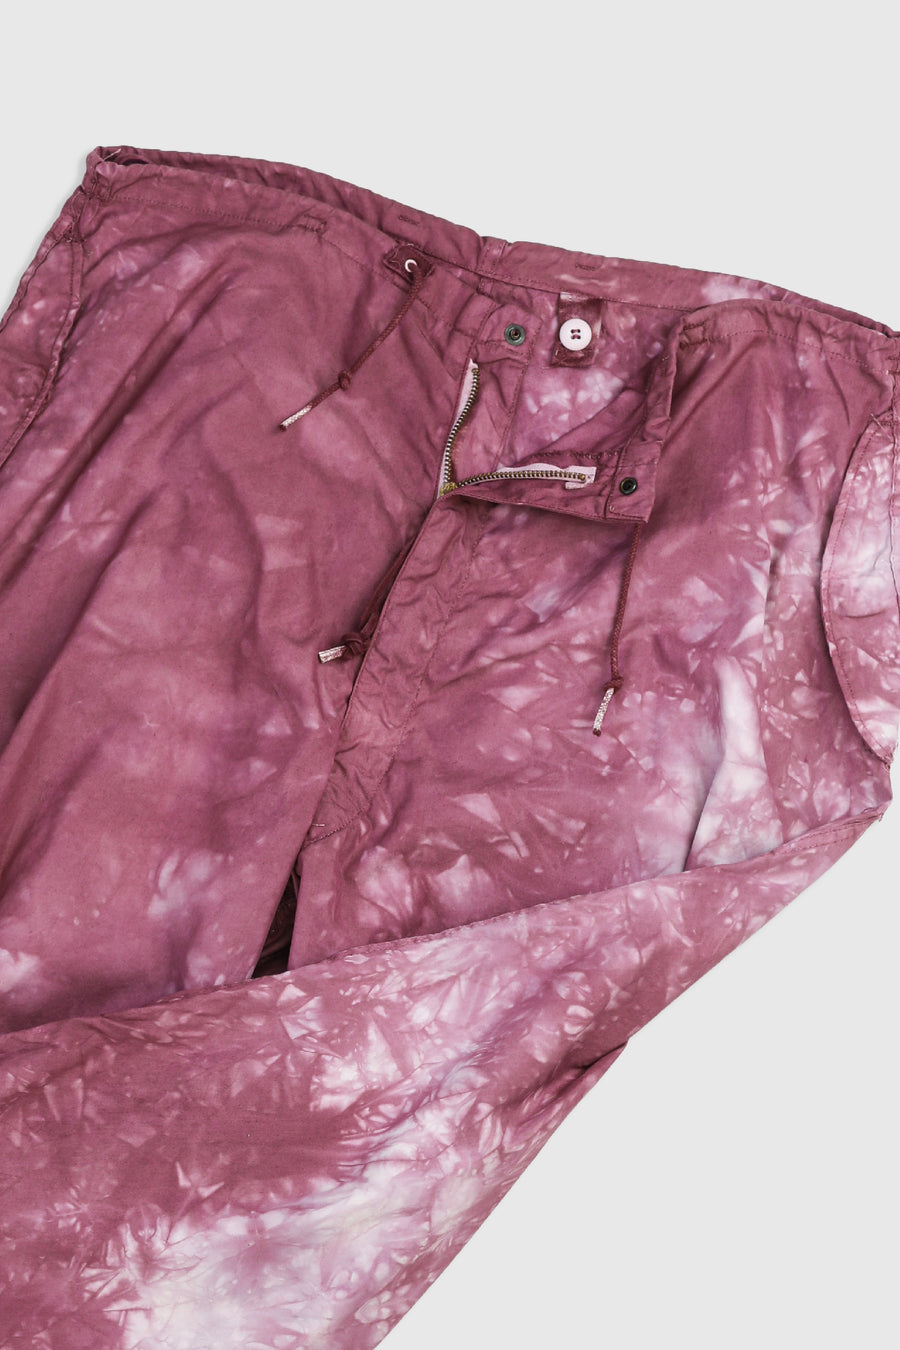 Vintage Pink Parachute Pants